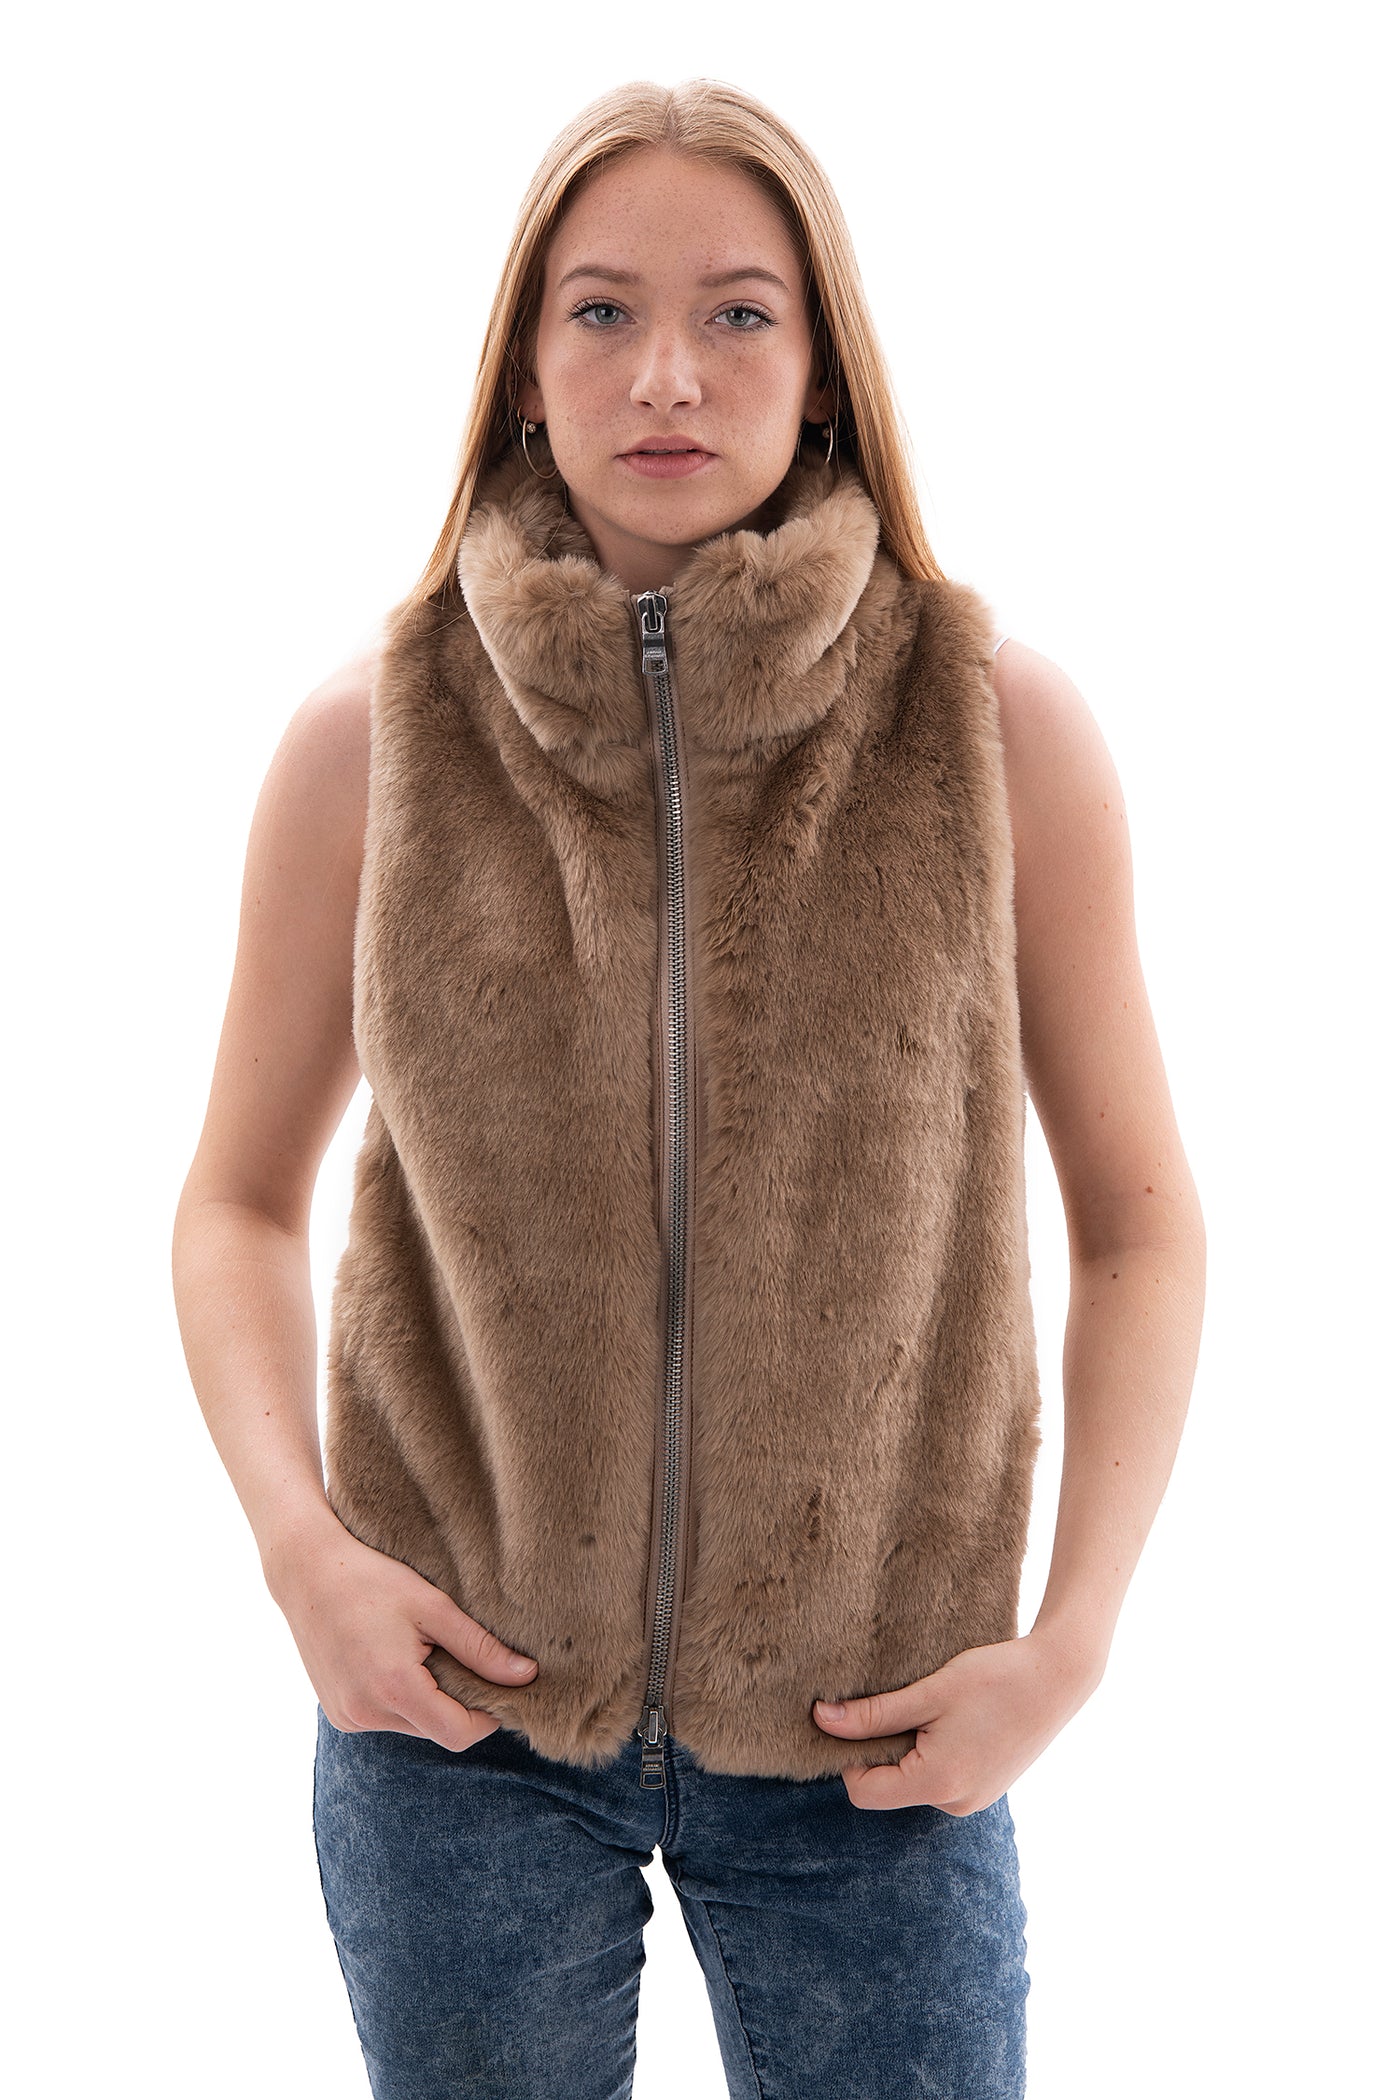 Armani Exchange Faux Fur Body Warmer